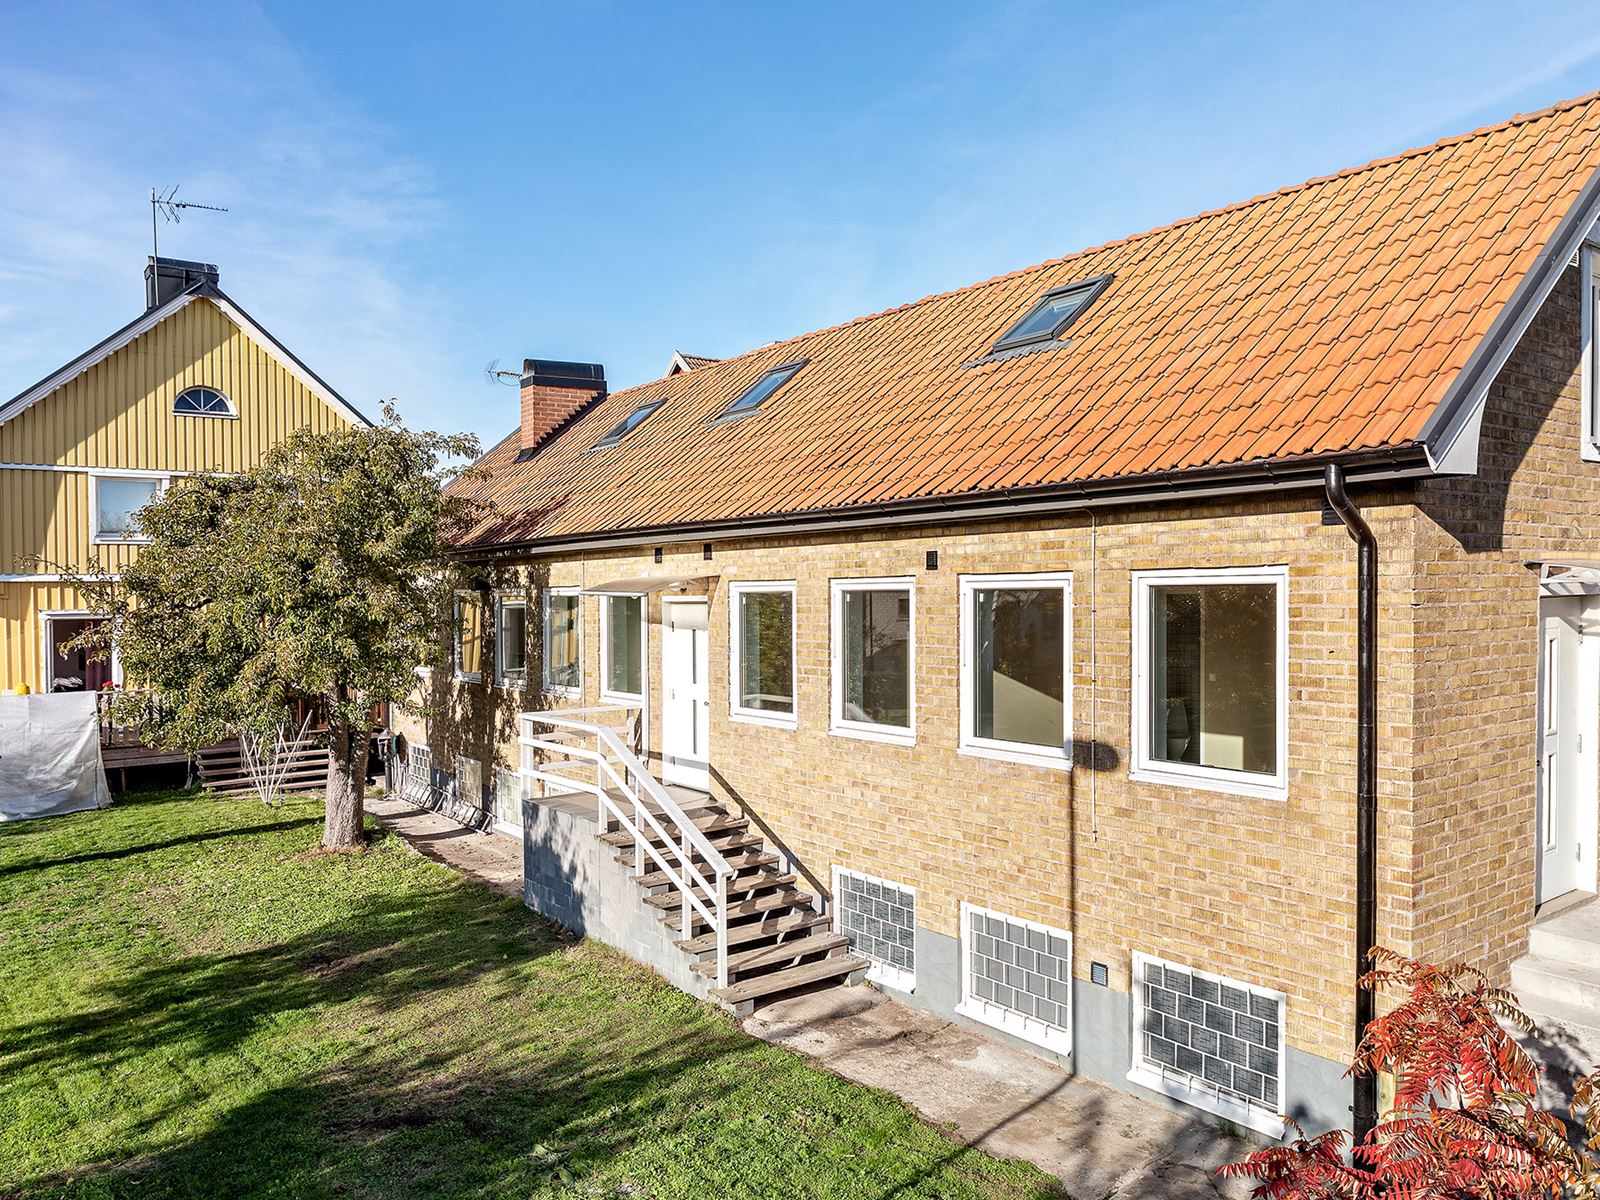 Hyreshus (gul fasad). Typkod 220 med 3 lägenheter och outhyrd källarlgh + Gårdsbyggnad enligt planen. Margaretagatan 21 - Bjurfors